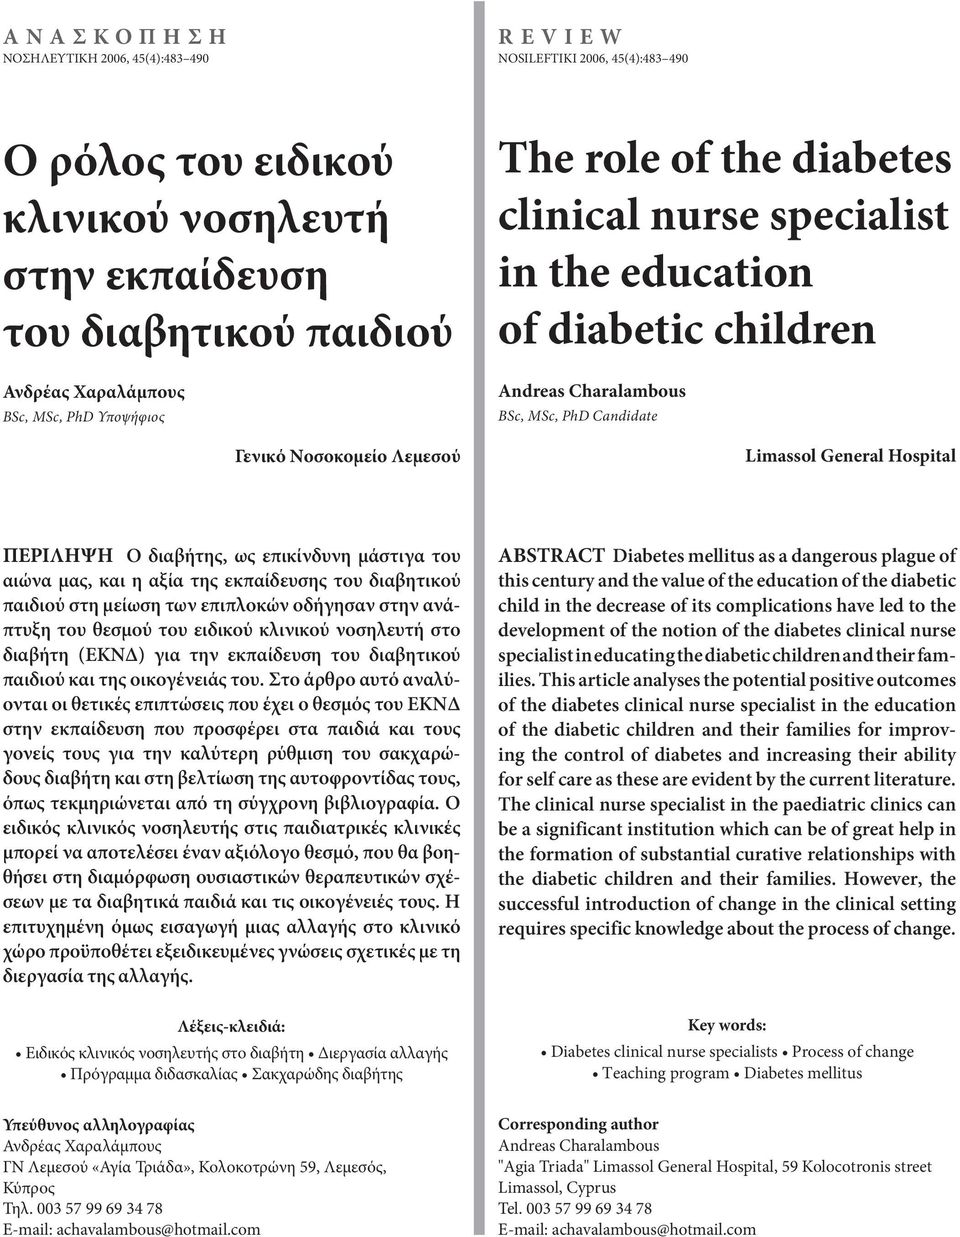 ΠΕΡΙΛΗΨΗ Ο διαβήτης, ως επικίνδυνη μάστιγα του αιώνα μας, και η αξία της εκπαίδευσης του διαβητικού παιδιού στη μείωση των επιπλοκών οδήγησαν στην ανά πτυξη του θεσμού του ειδικού κλινικού νοσηλευτή